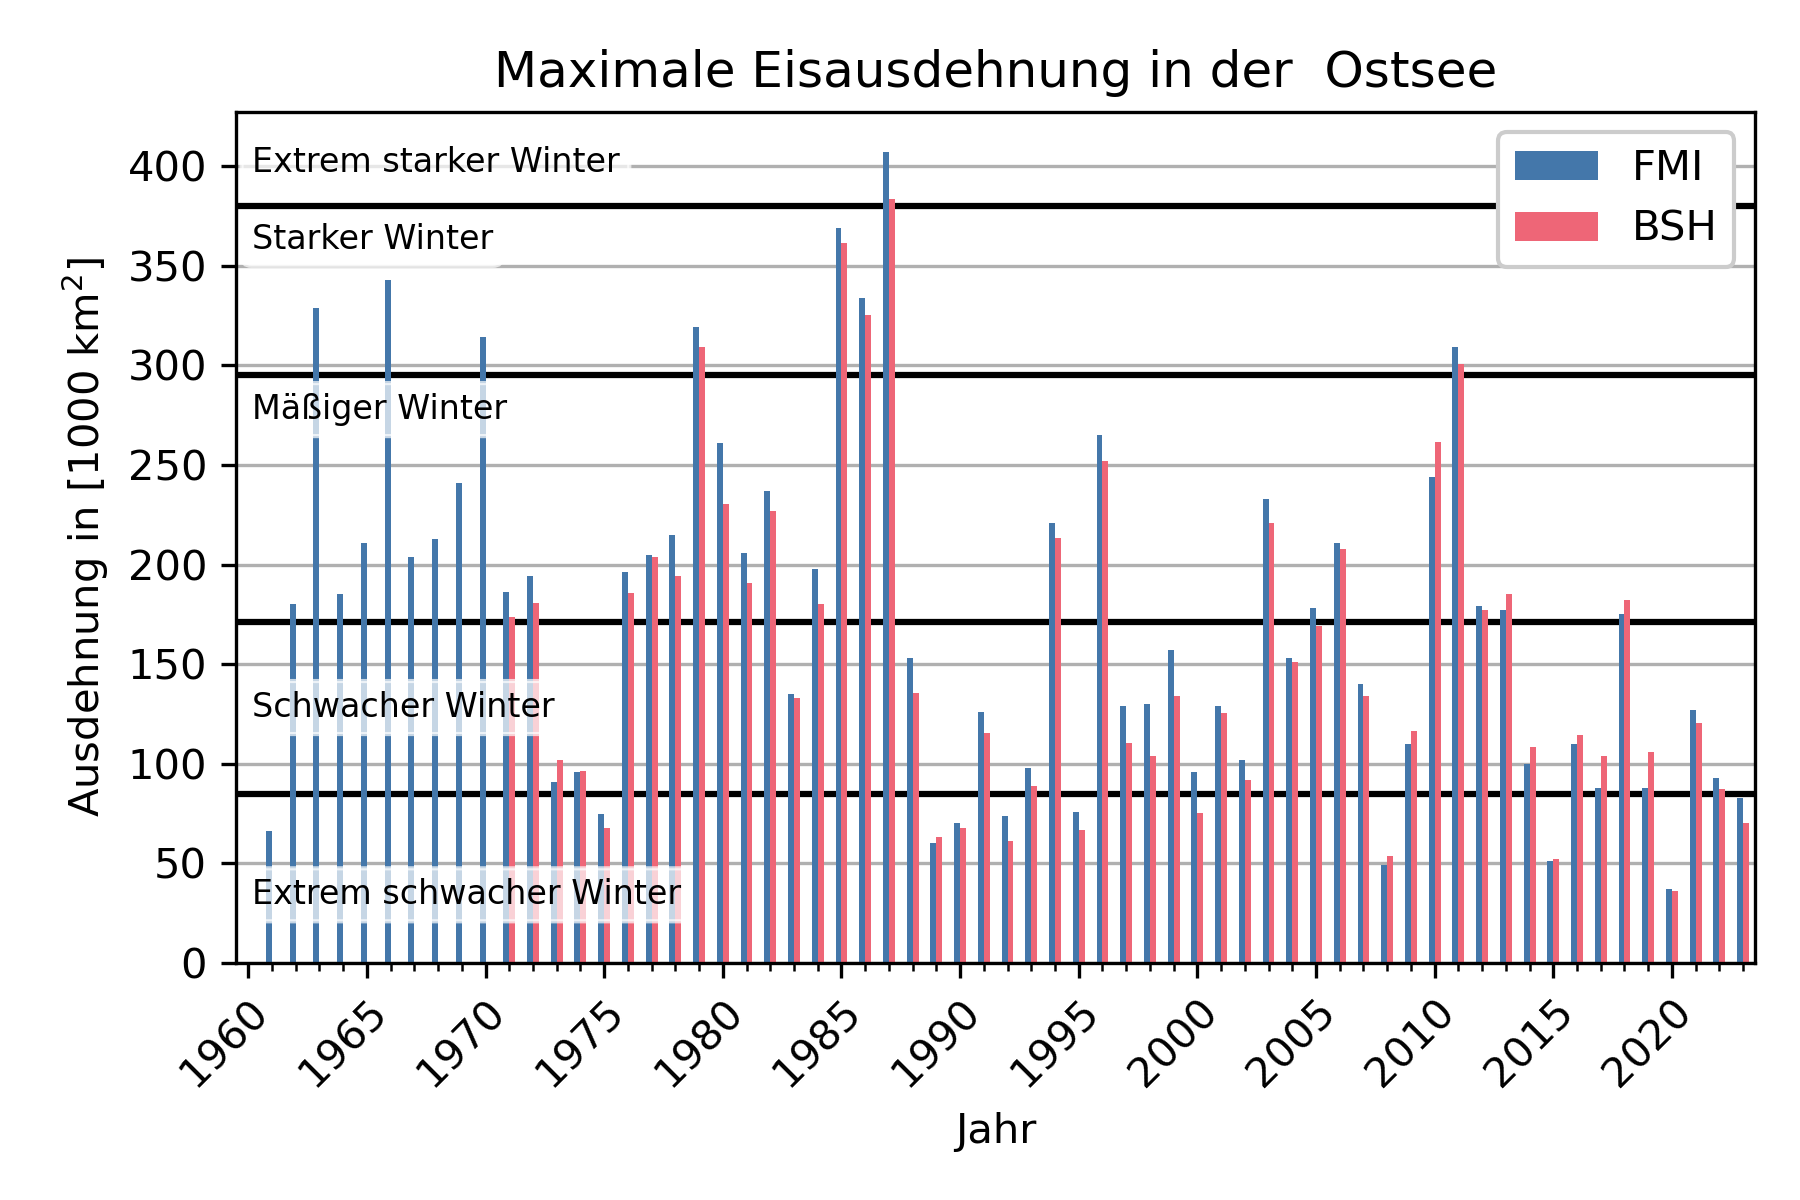 Zeitreihe der maximalen Eisausdehung in der Ostsee vom FMI und dem BSH seit 1960.